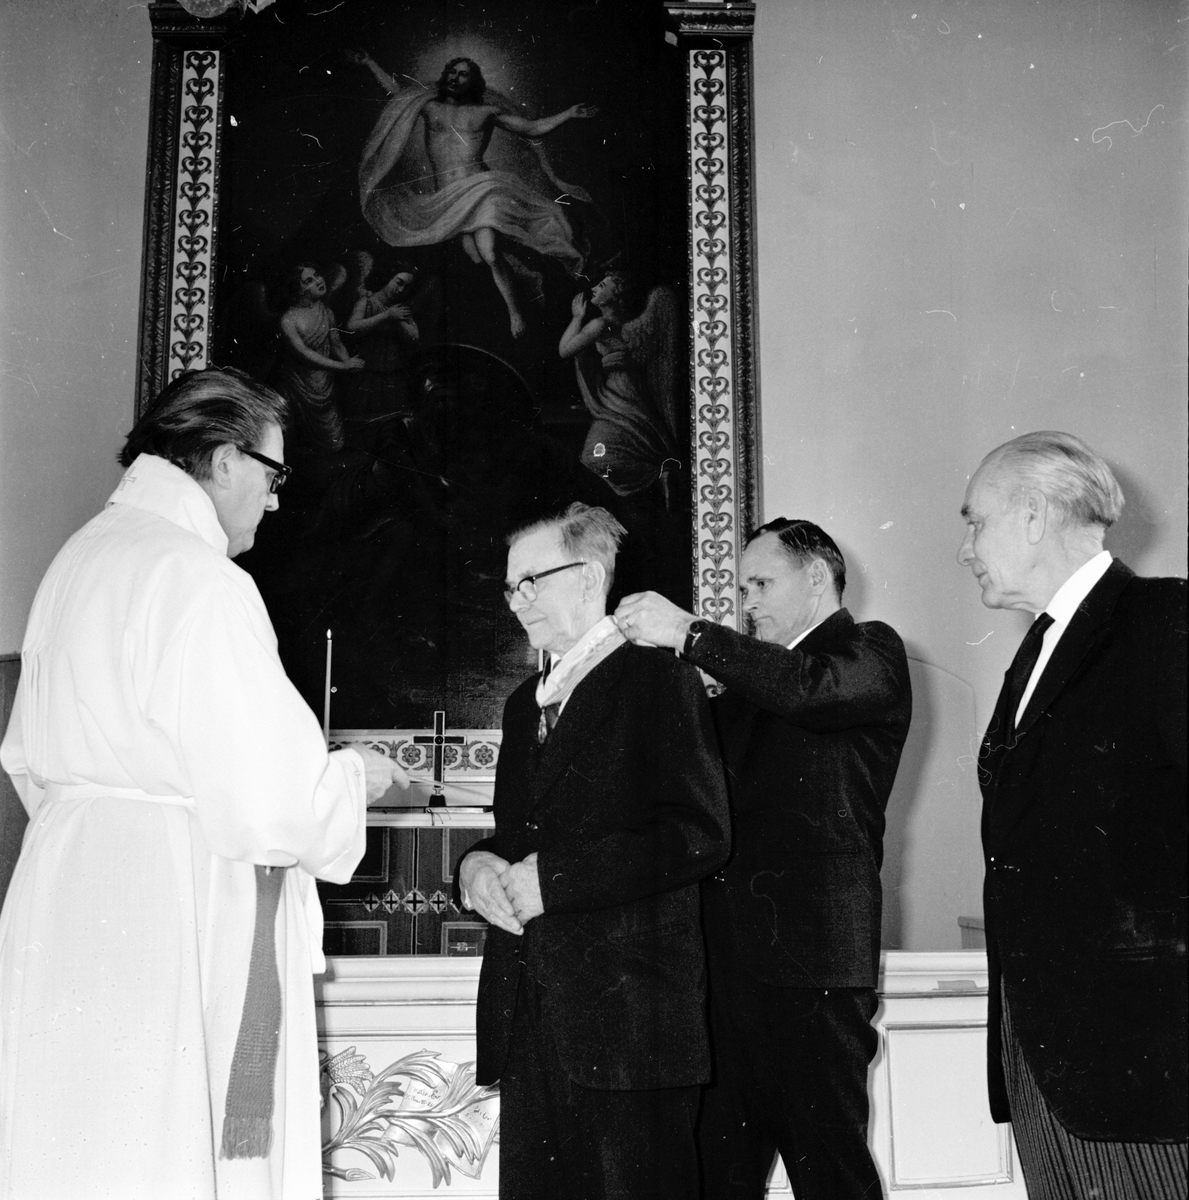 Undersviks kyrka,
Patr.Sälls utmärkelse till Edlund o Mårten Persson,
Mars 1972